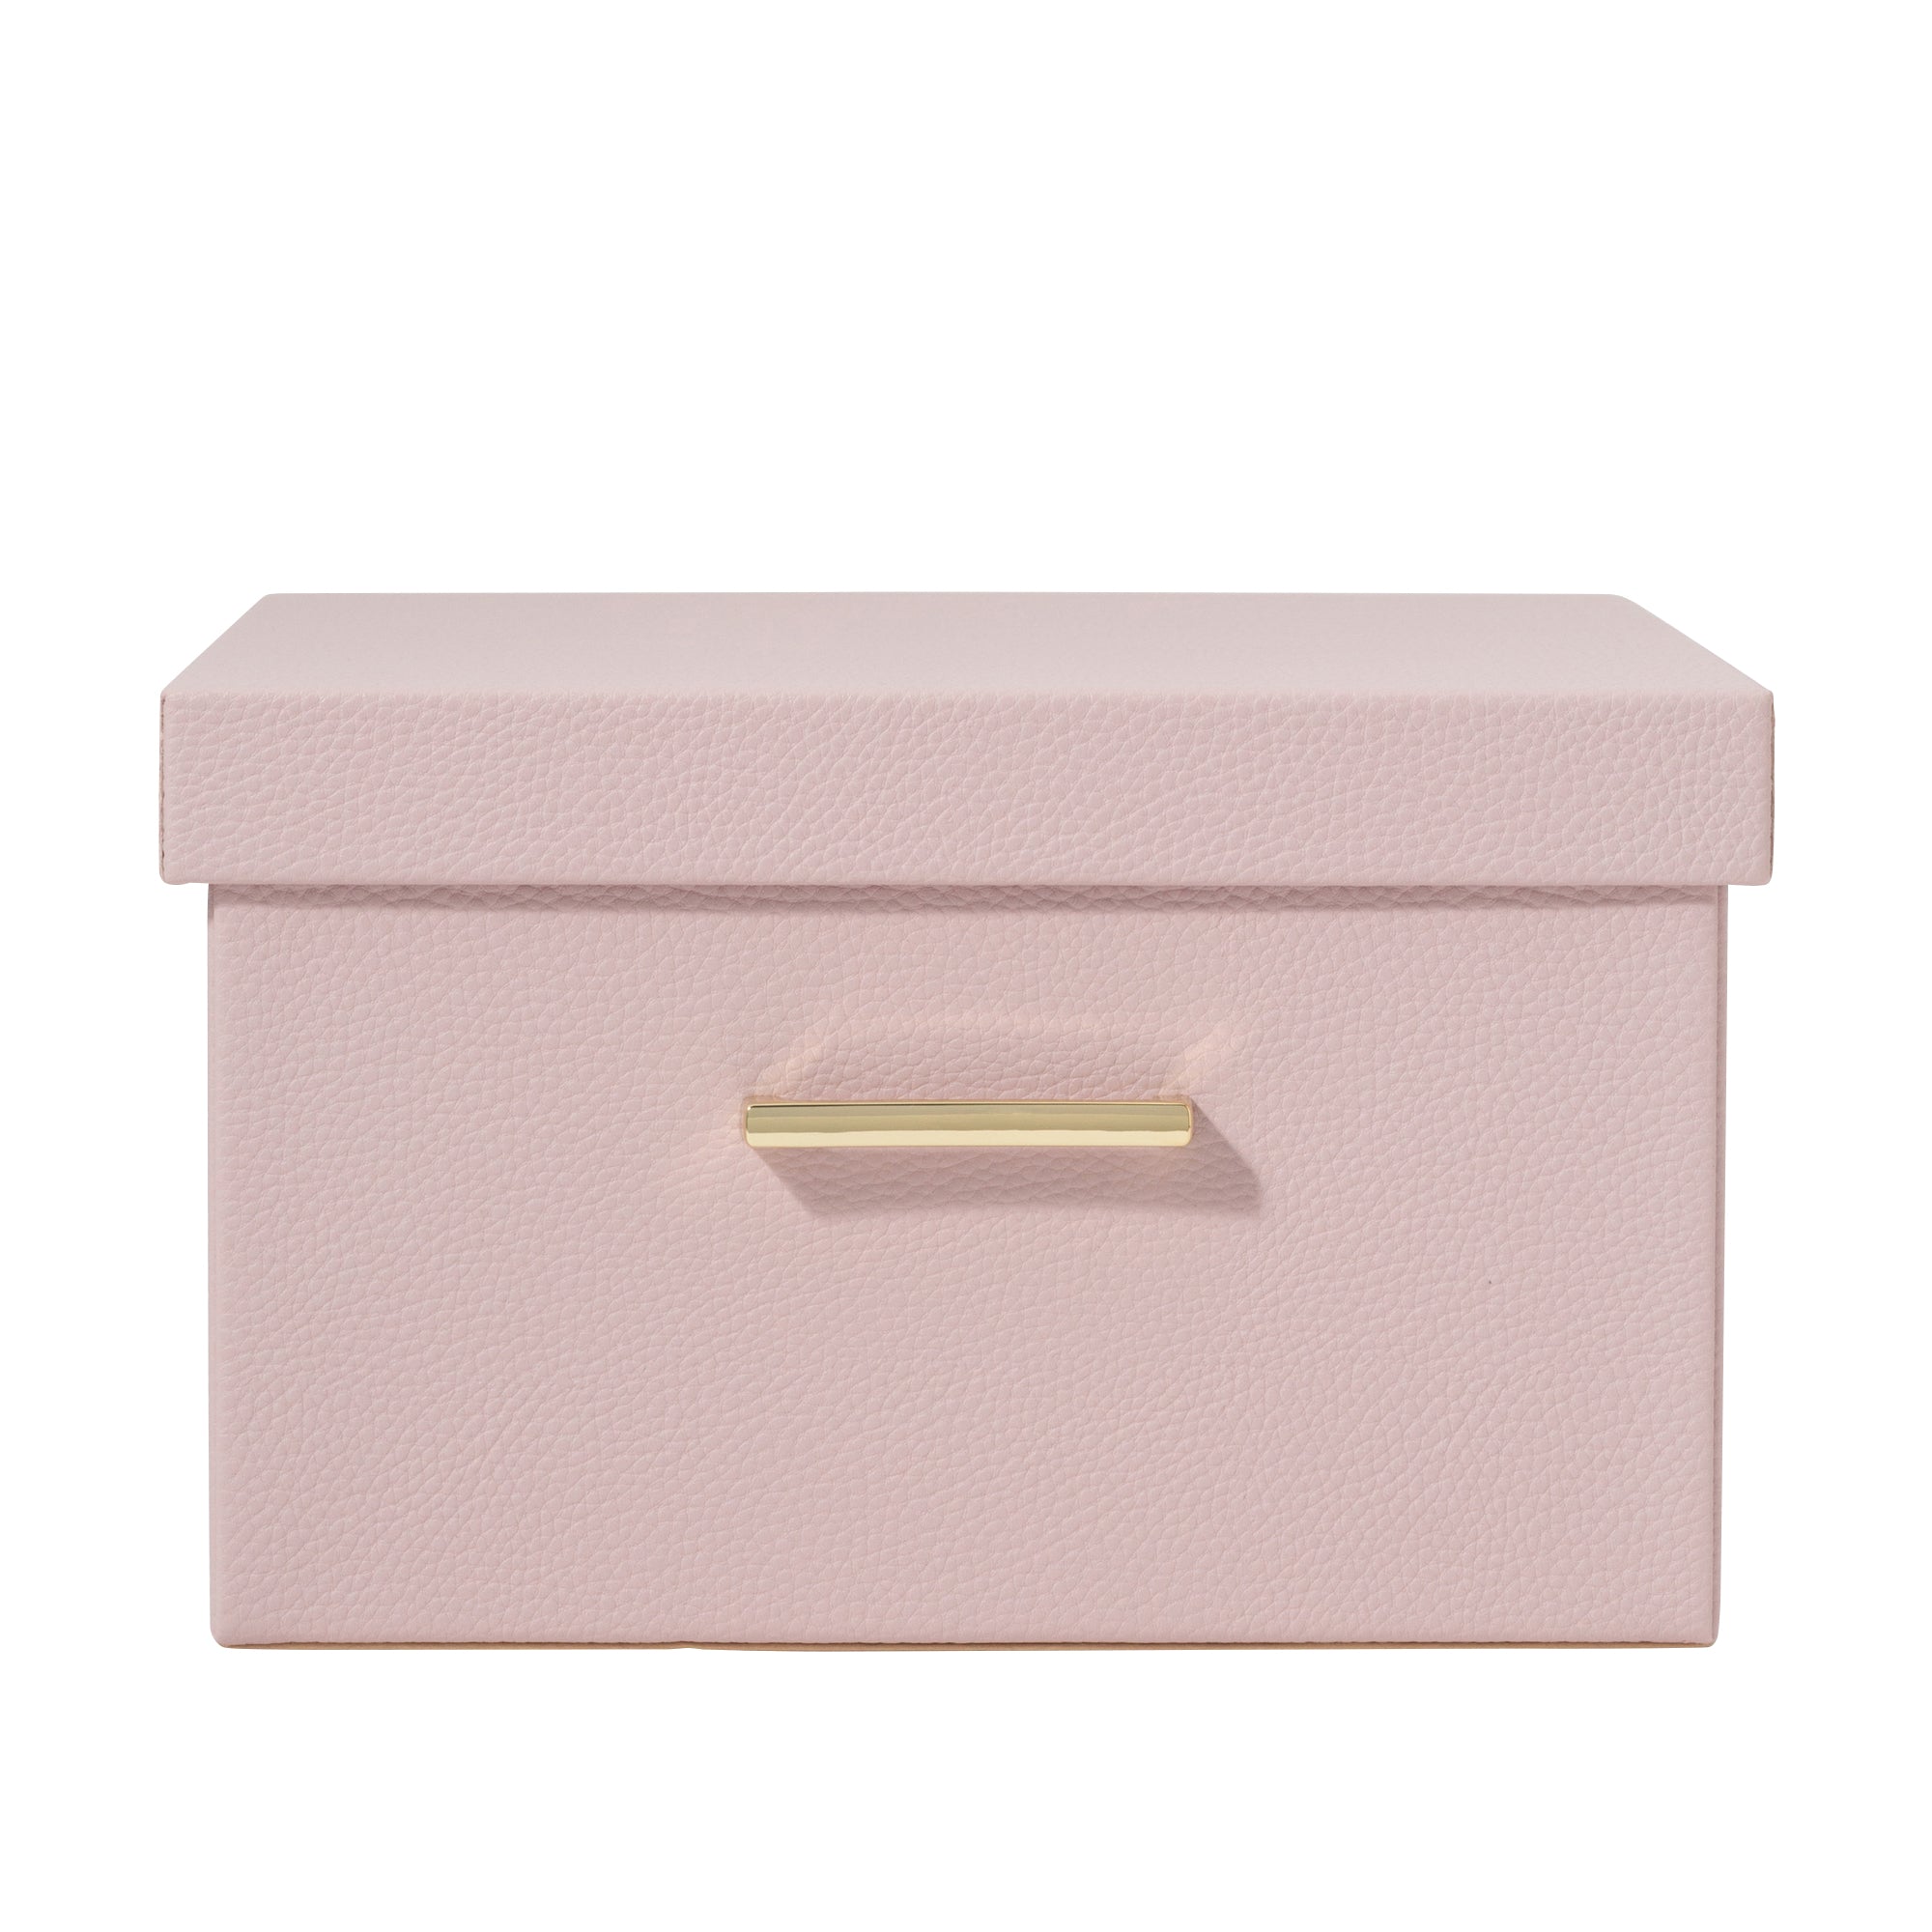 プリーレ ボックス L ピンク Francfranc フランフラン 公式通販 家具 インテリア 生活雑貨